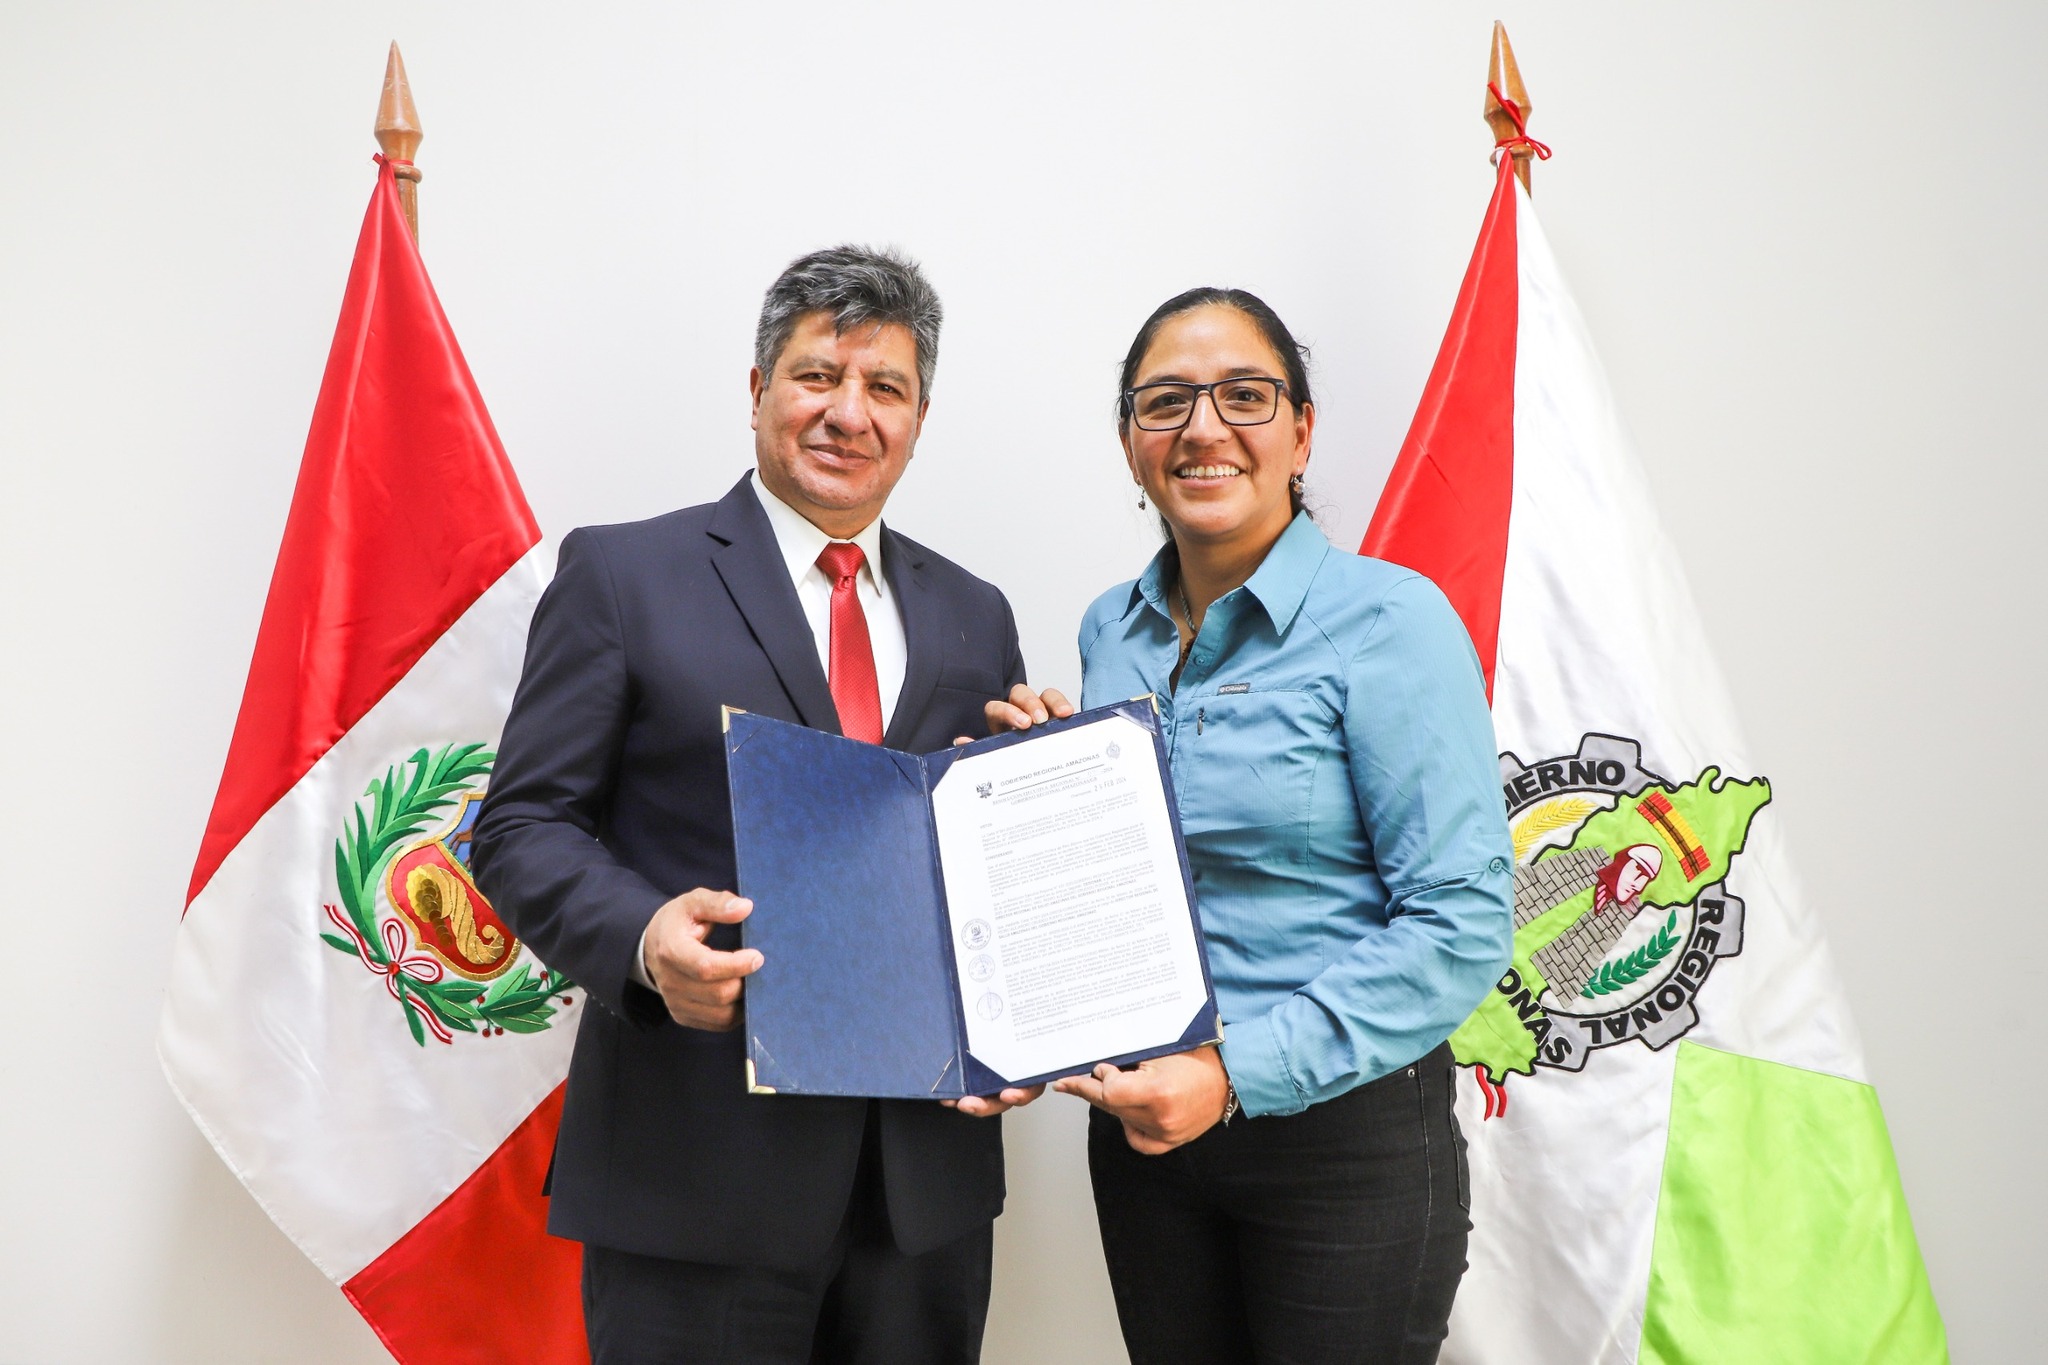 Tomás Pershing Bustamante Chauca designado como Nuevo Director Regional de Salud en Amazonas